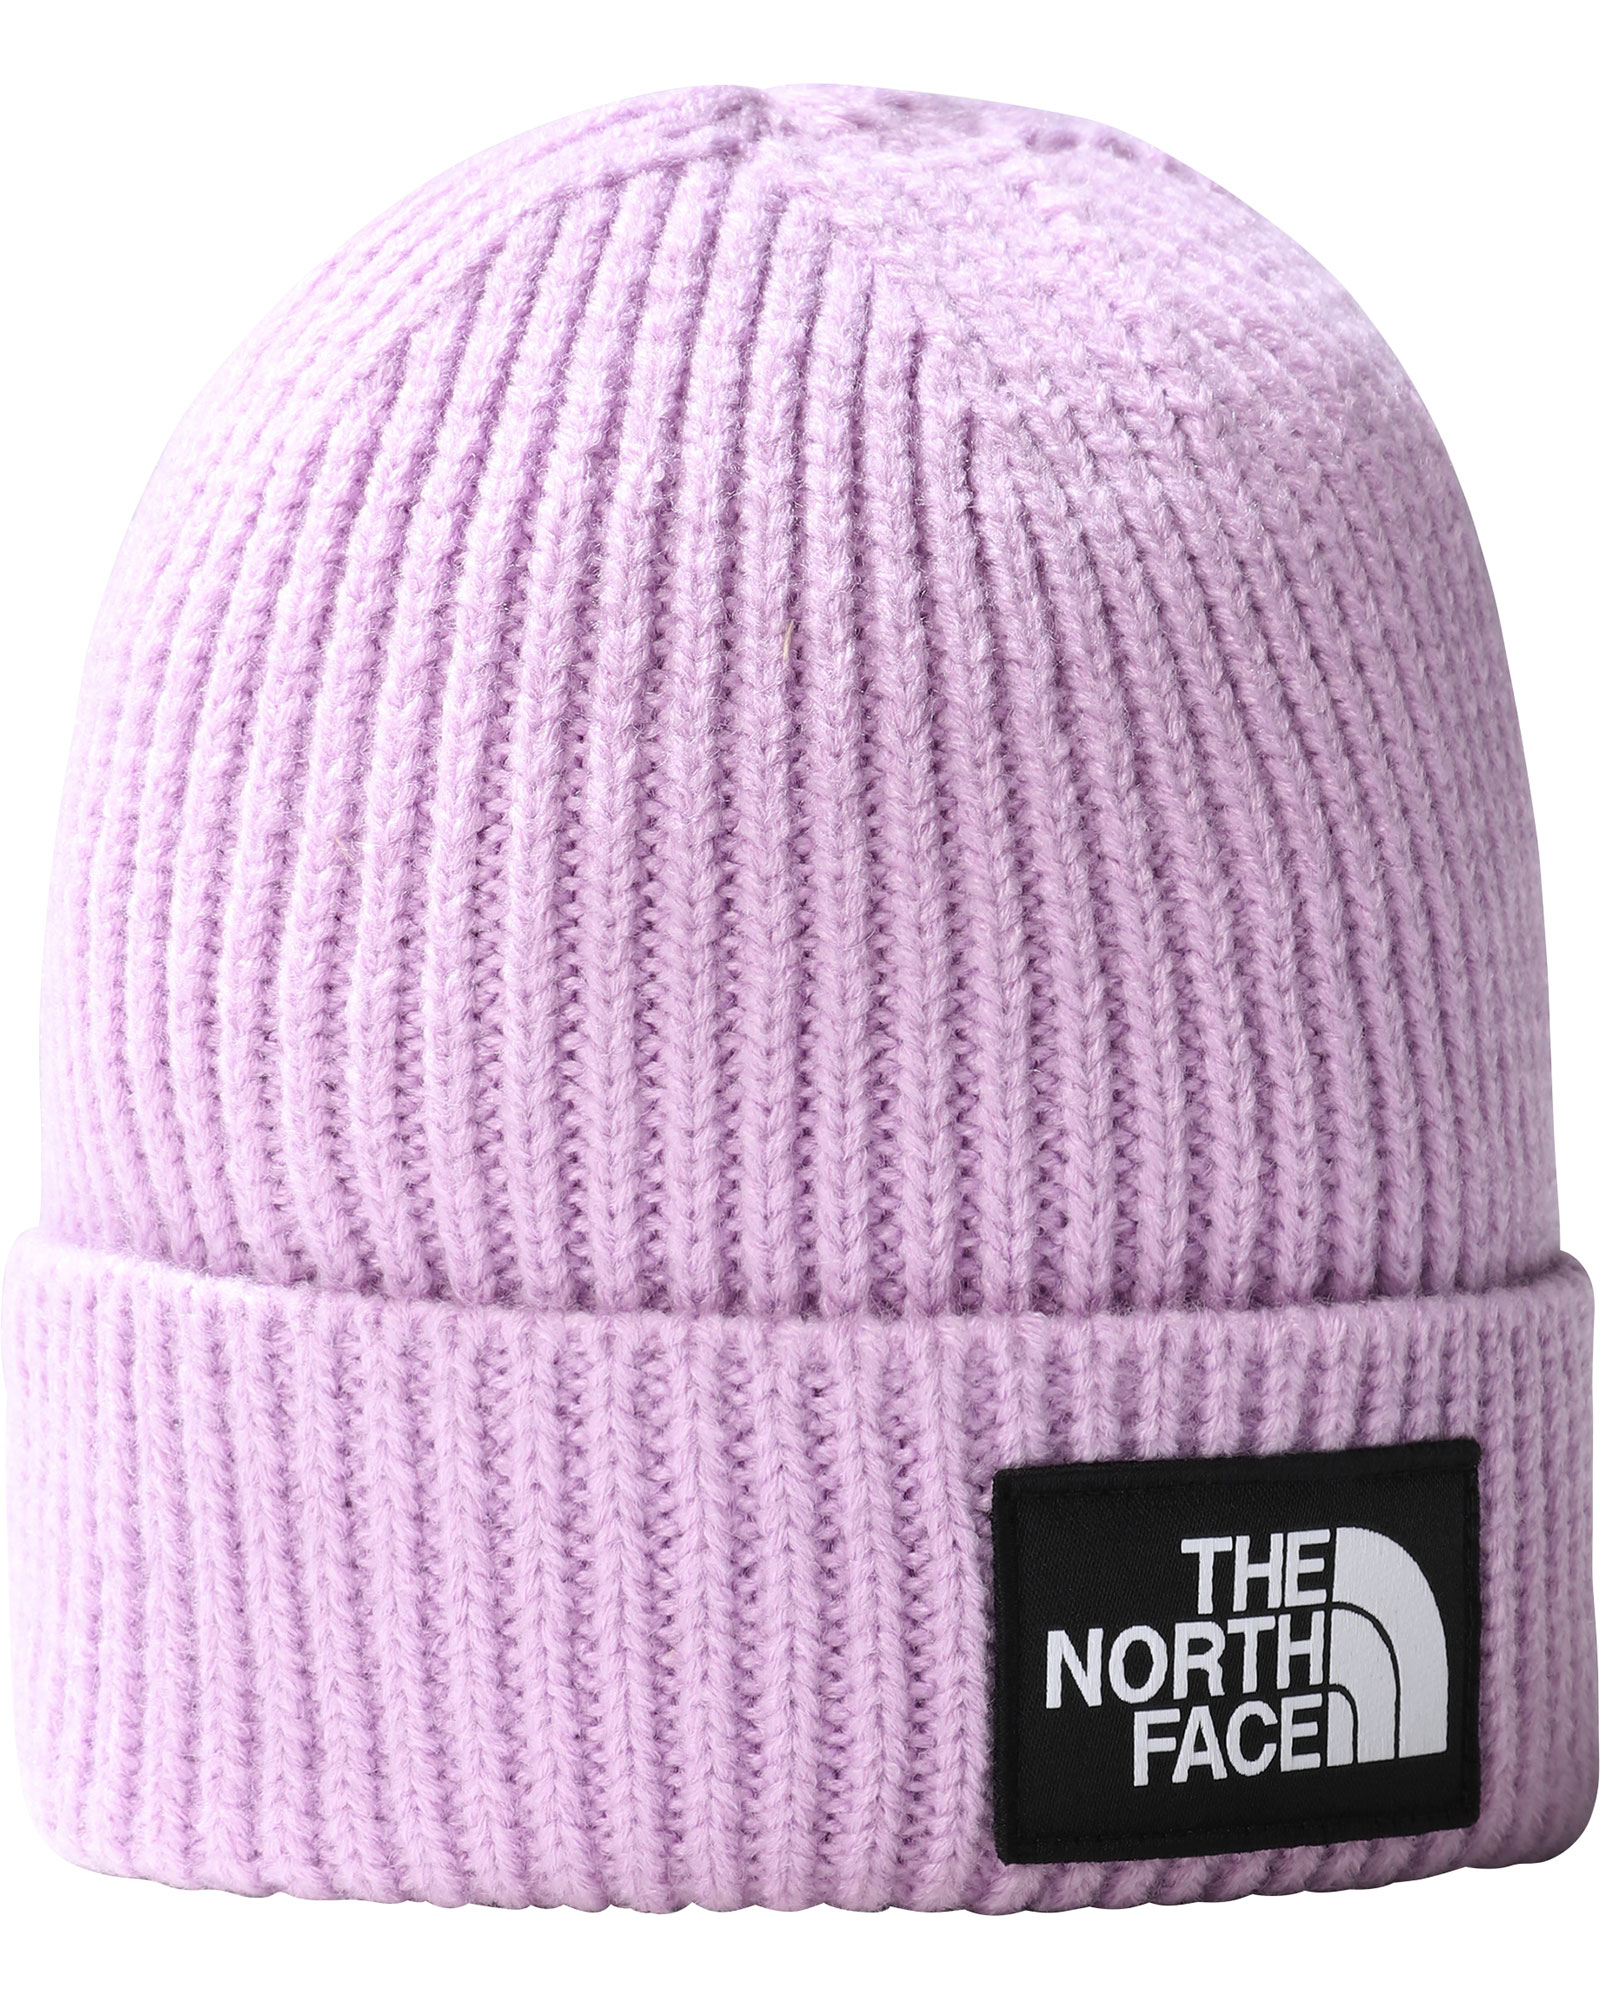 The North Face Tnf Box Logo Cuffed Kids Beanie